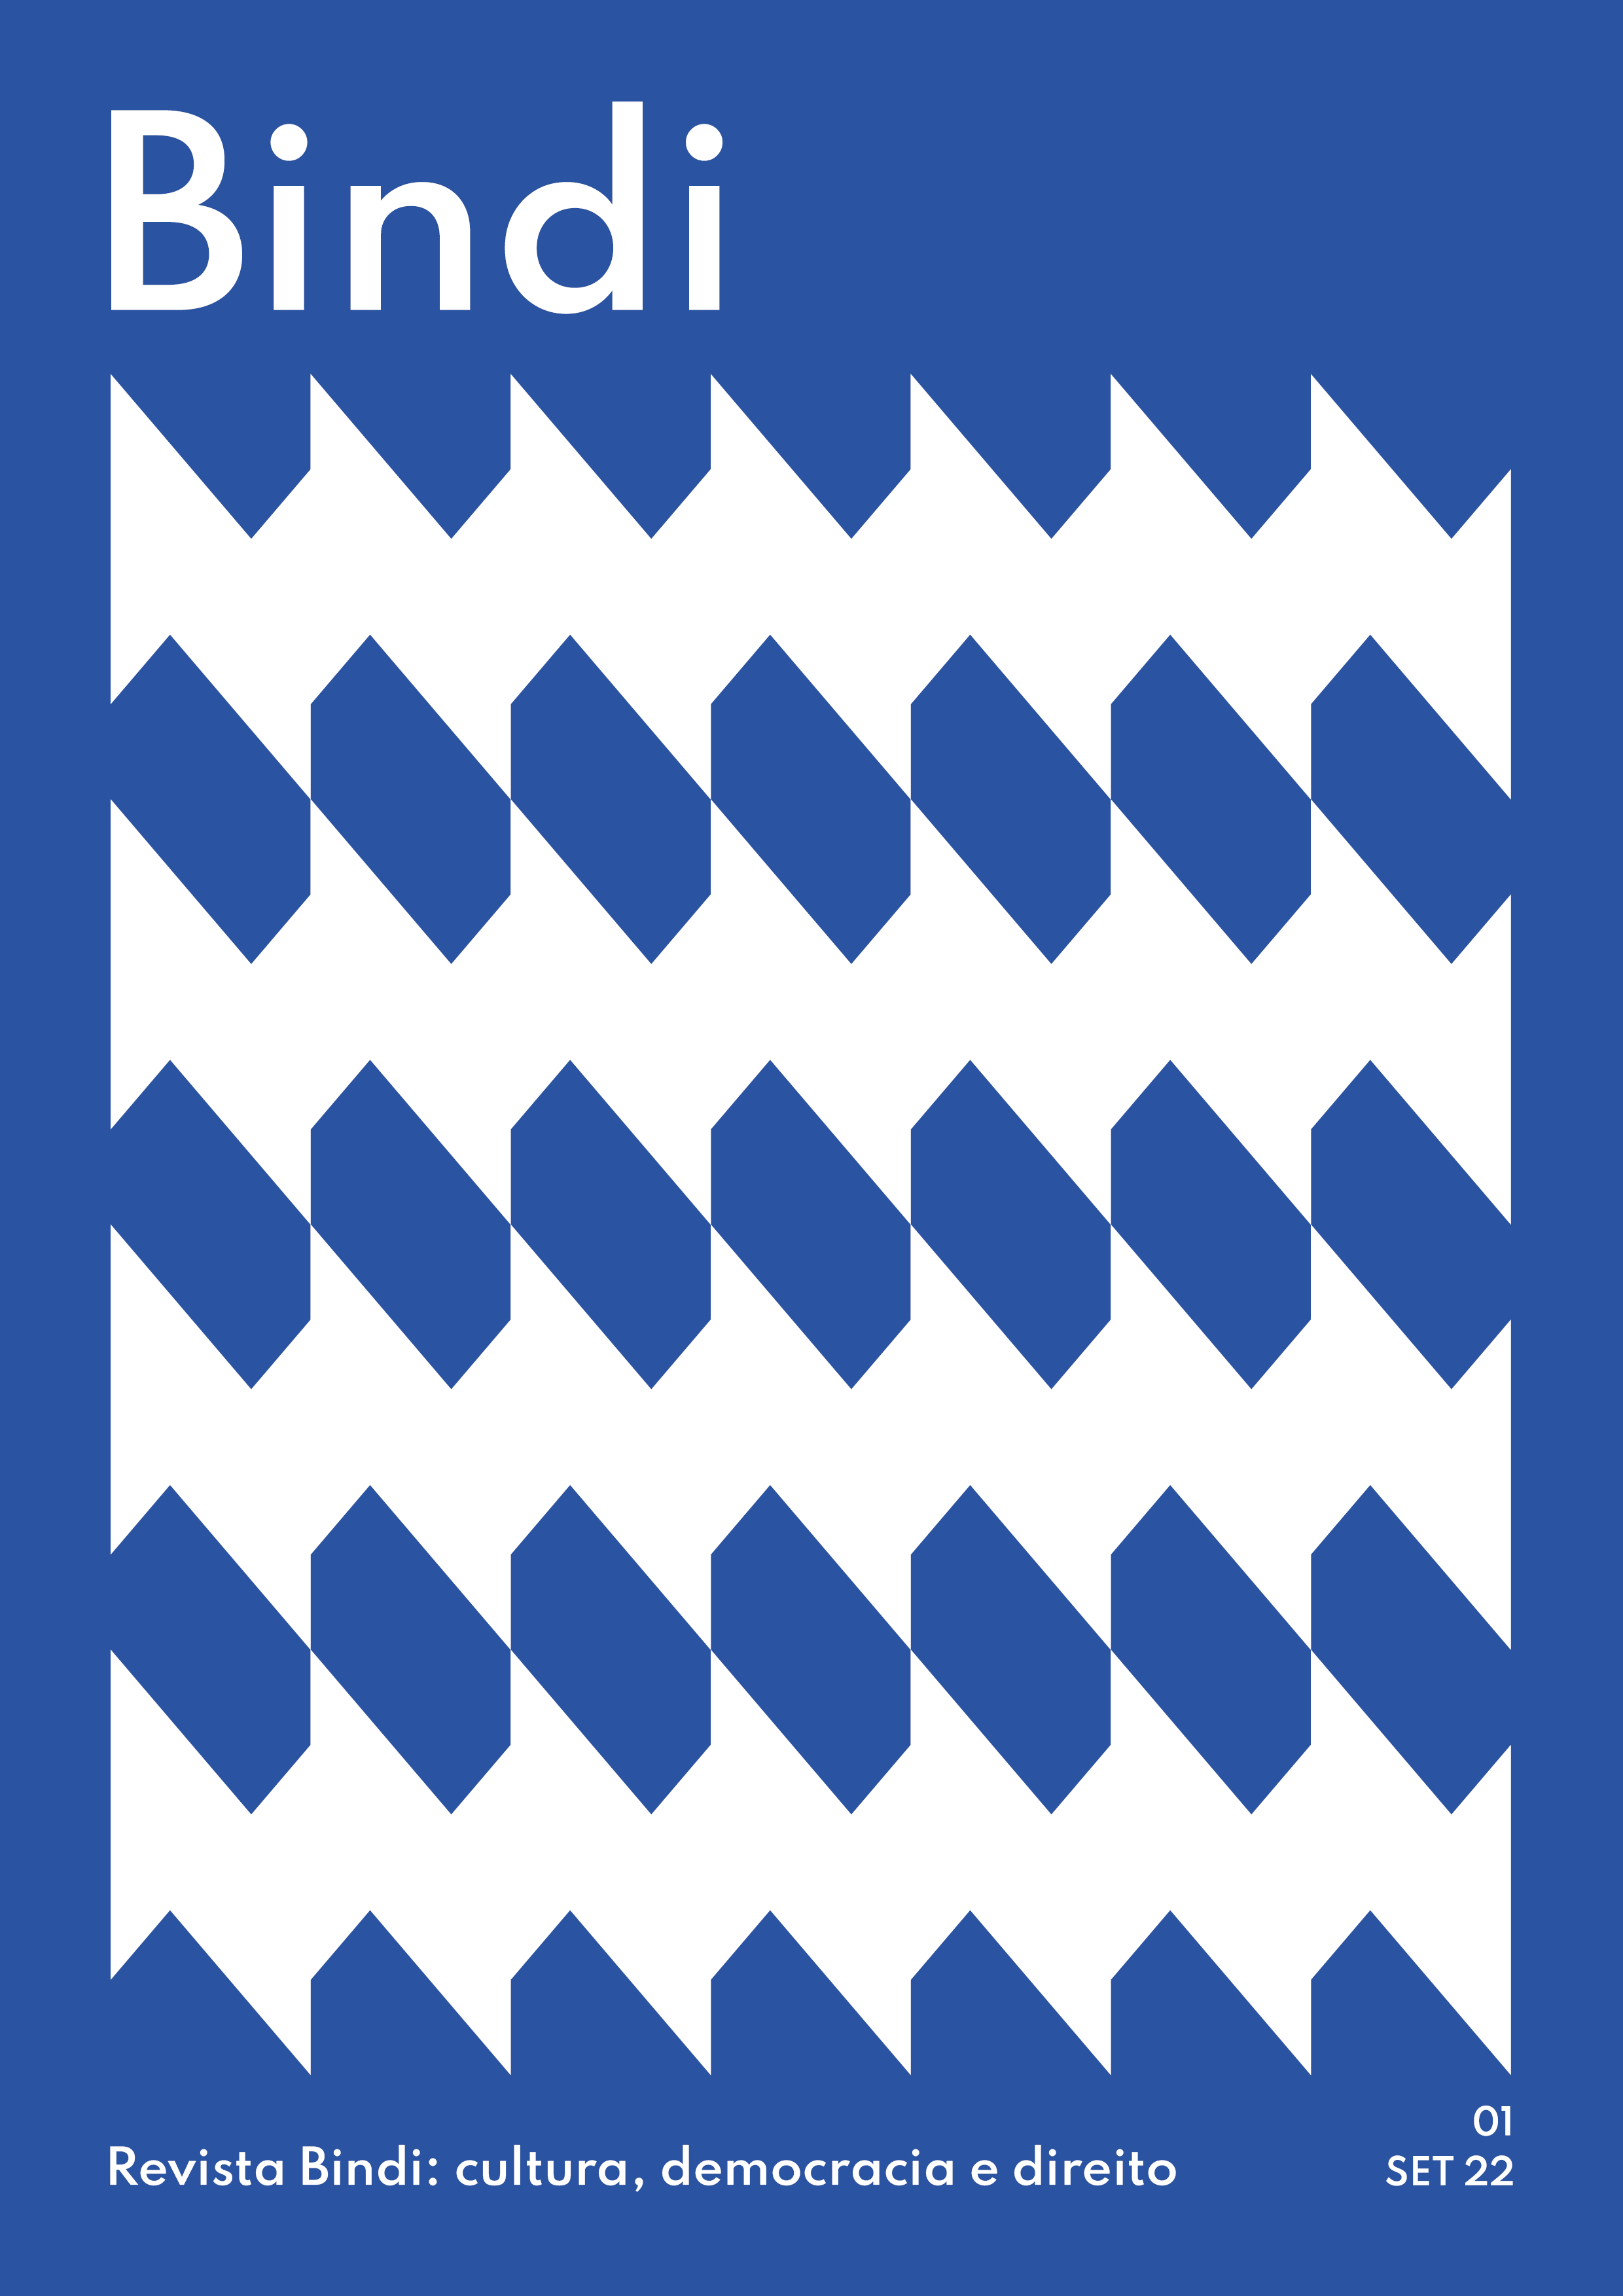 Revista Bindi: cultura, democracia e direito, capa com padrões geométricos em azul e branca